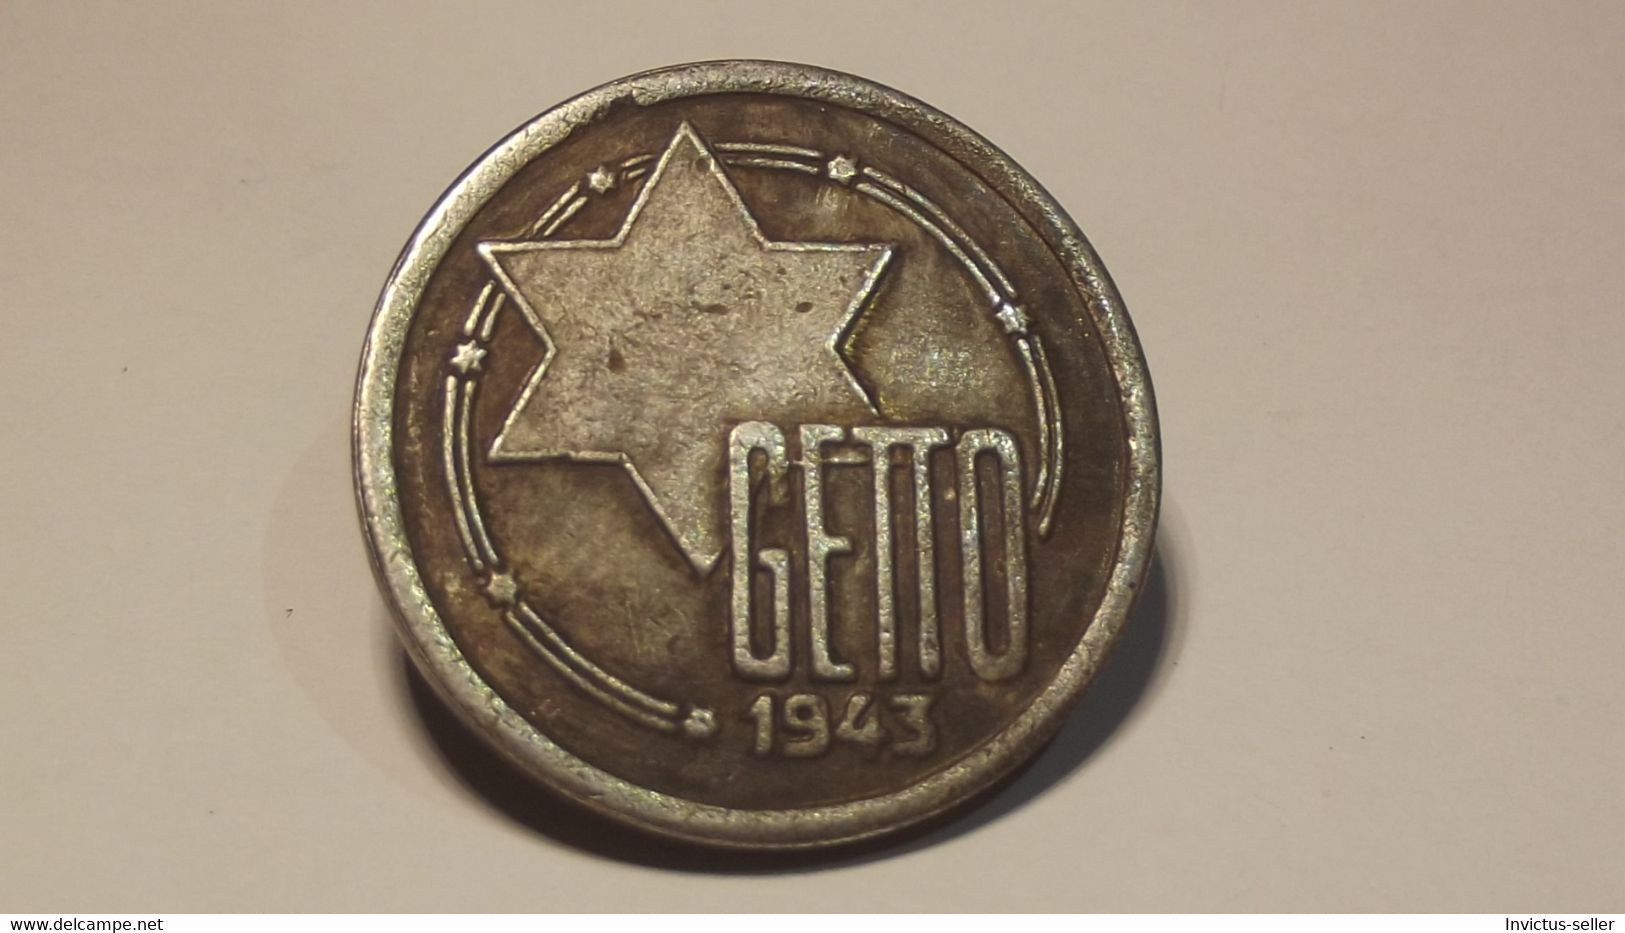 GETTO 20 MARK 1943 LITZMANNSTADT GERMAN COIN MONETA GHETTO EBREI JUDE JUIFE Auschwitz JUDE EBREI GERMANY - Colecciones